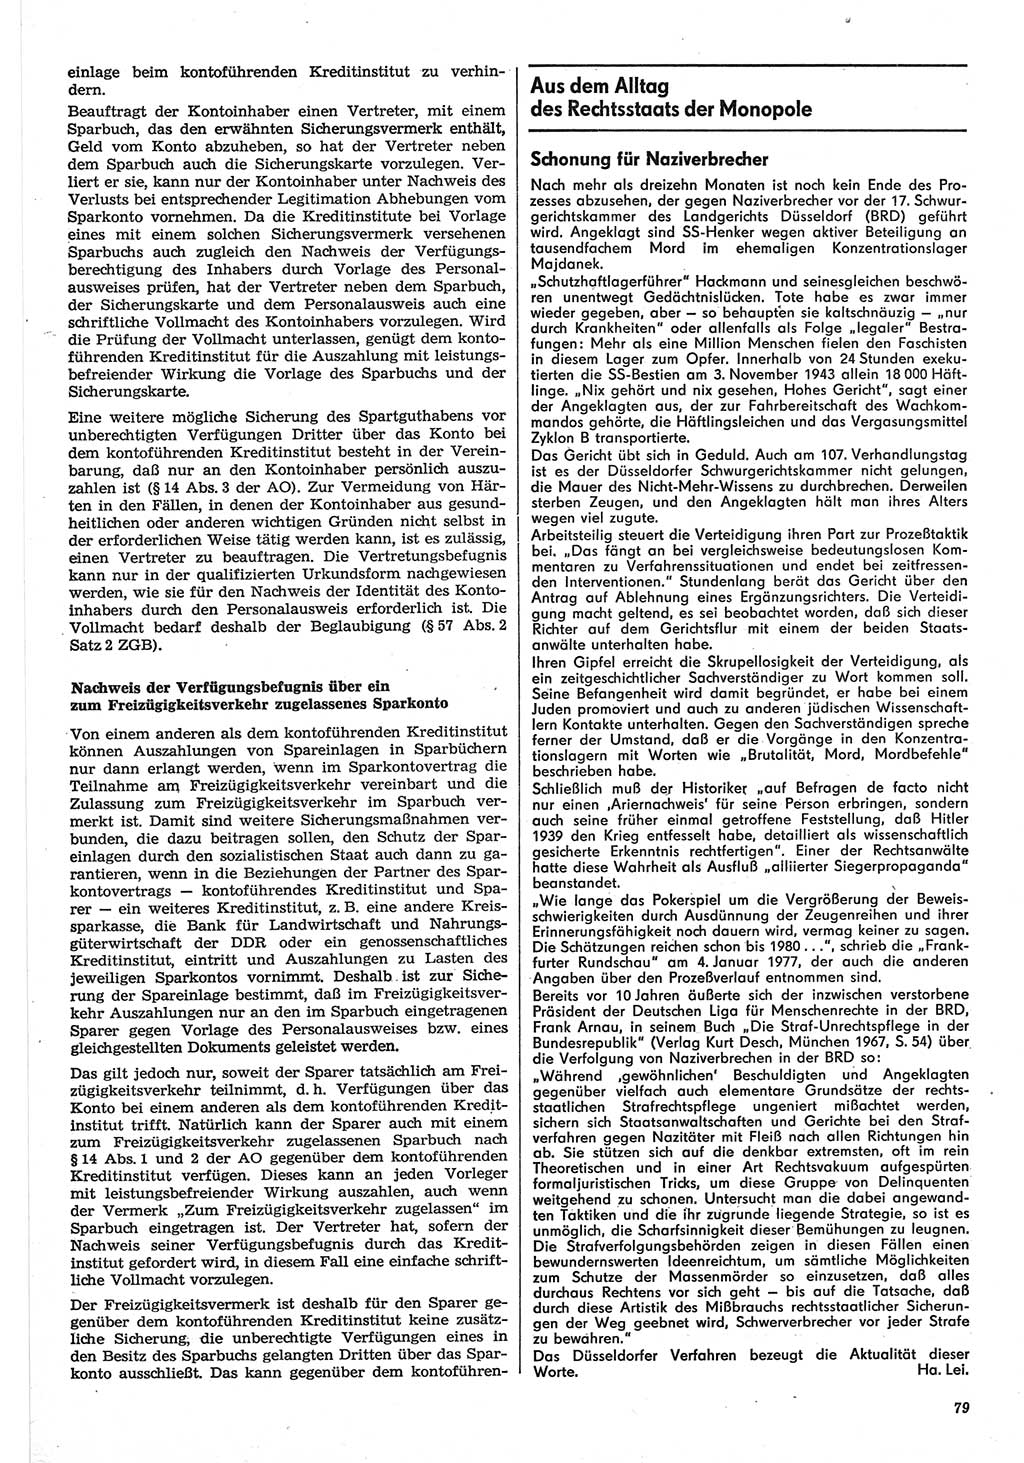 Neue Justiz (NJ), Zeitschrift für Recht und Rechtswissenschaft-Zeitschrift, sozialistisches Recht und Gesetzlichkeit, 31. Jahrgang 1977, Seite 79 (NJ DDR 1977, S. 79)